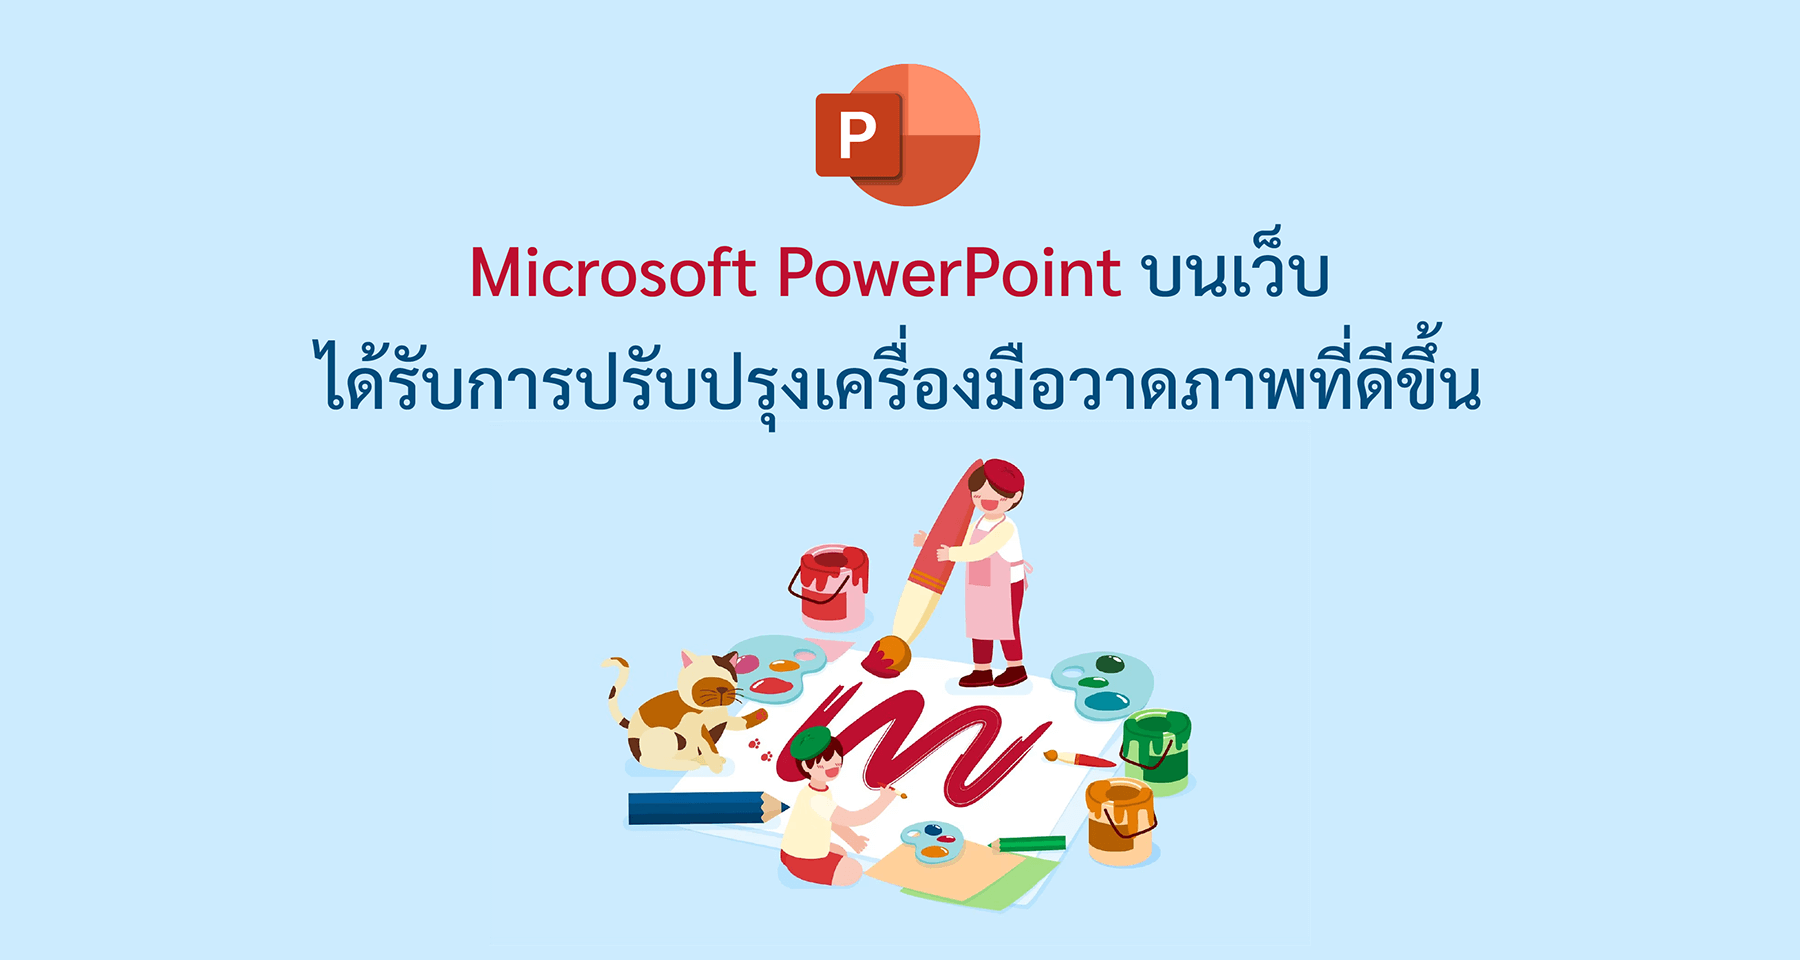 Microsoft PowerPoint บนเว็บได้รับการปรับปรุงเครื่องมือวาดภาพที่ดีขึ้น